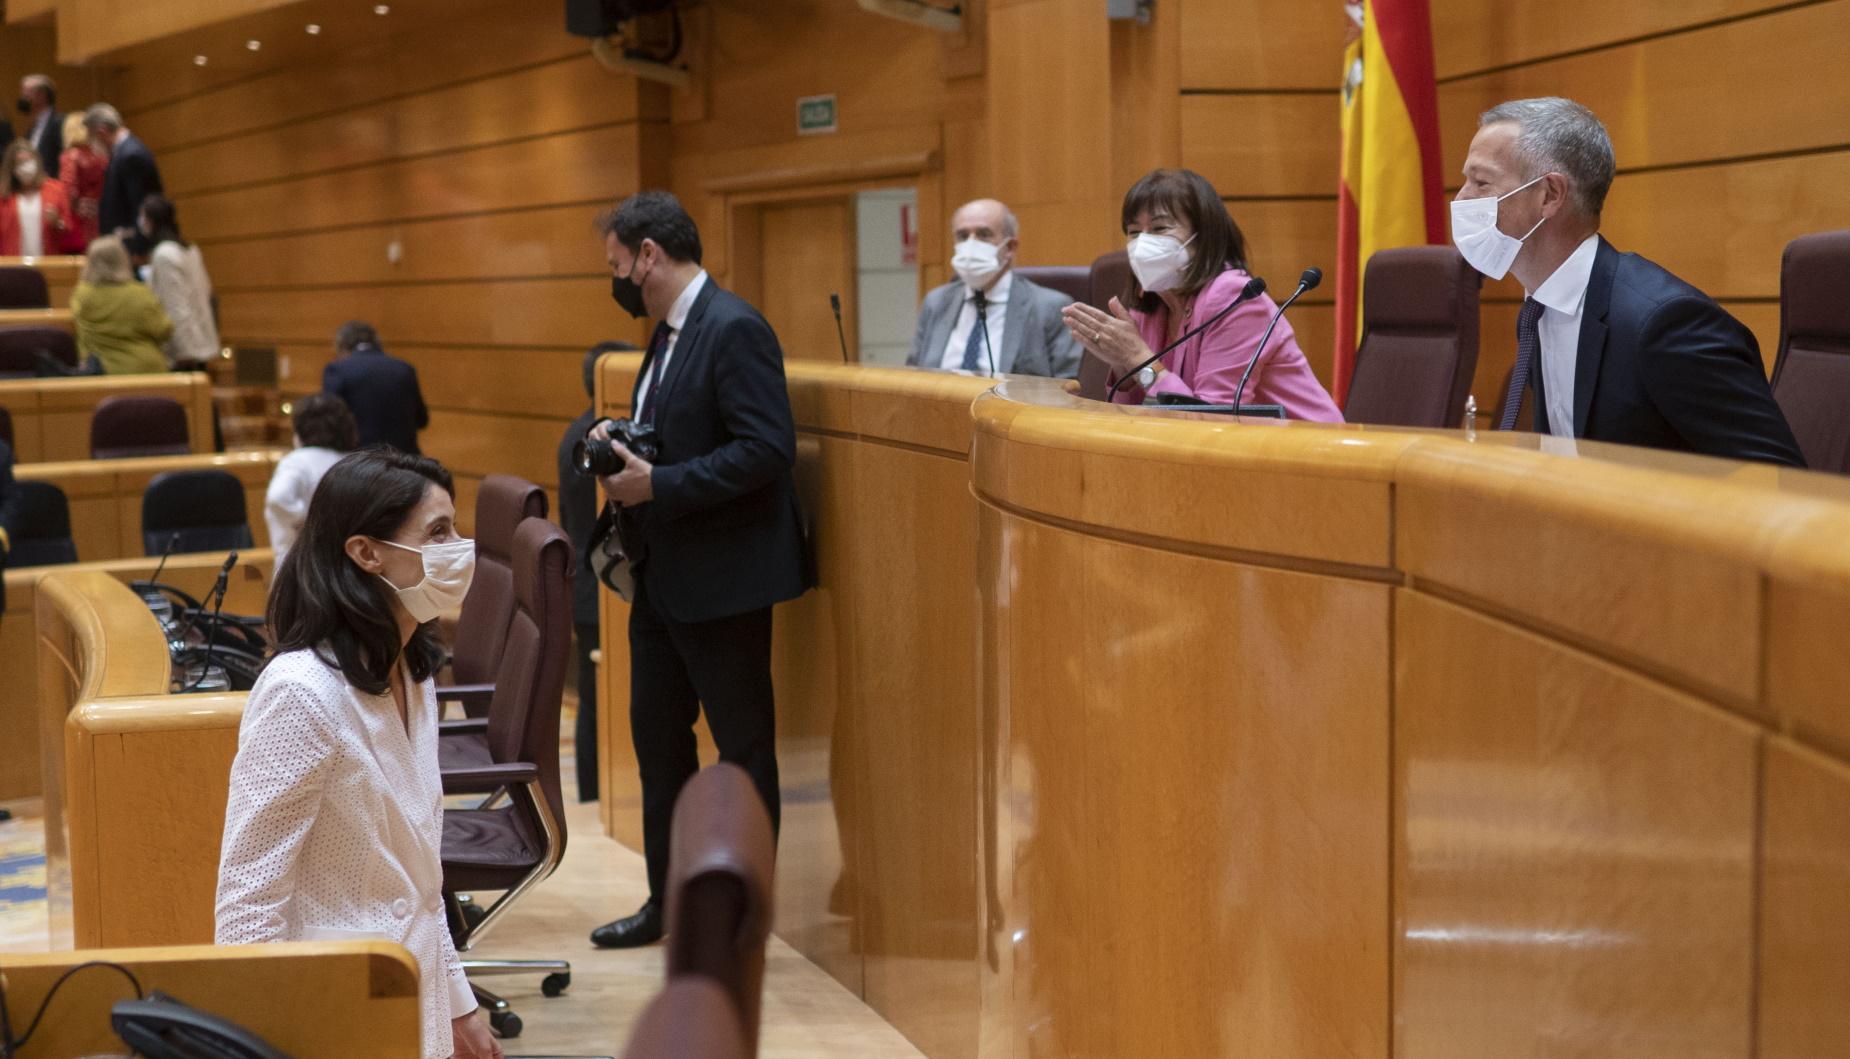 La ministra de Justicia, Pilar Llop, se dirige a hablar con el presidente del Senado, Ander Gil, durante el primer pleno y primera sesión de control al Gobierno en el Senado tras el parón estival, a 14 de septiembre de 2021, en Madrid (España). 